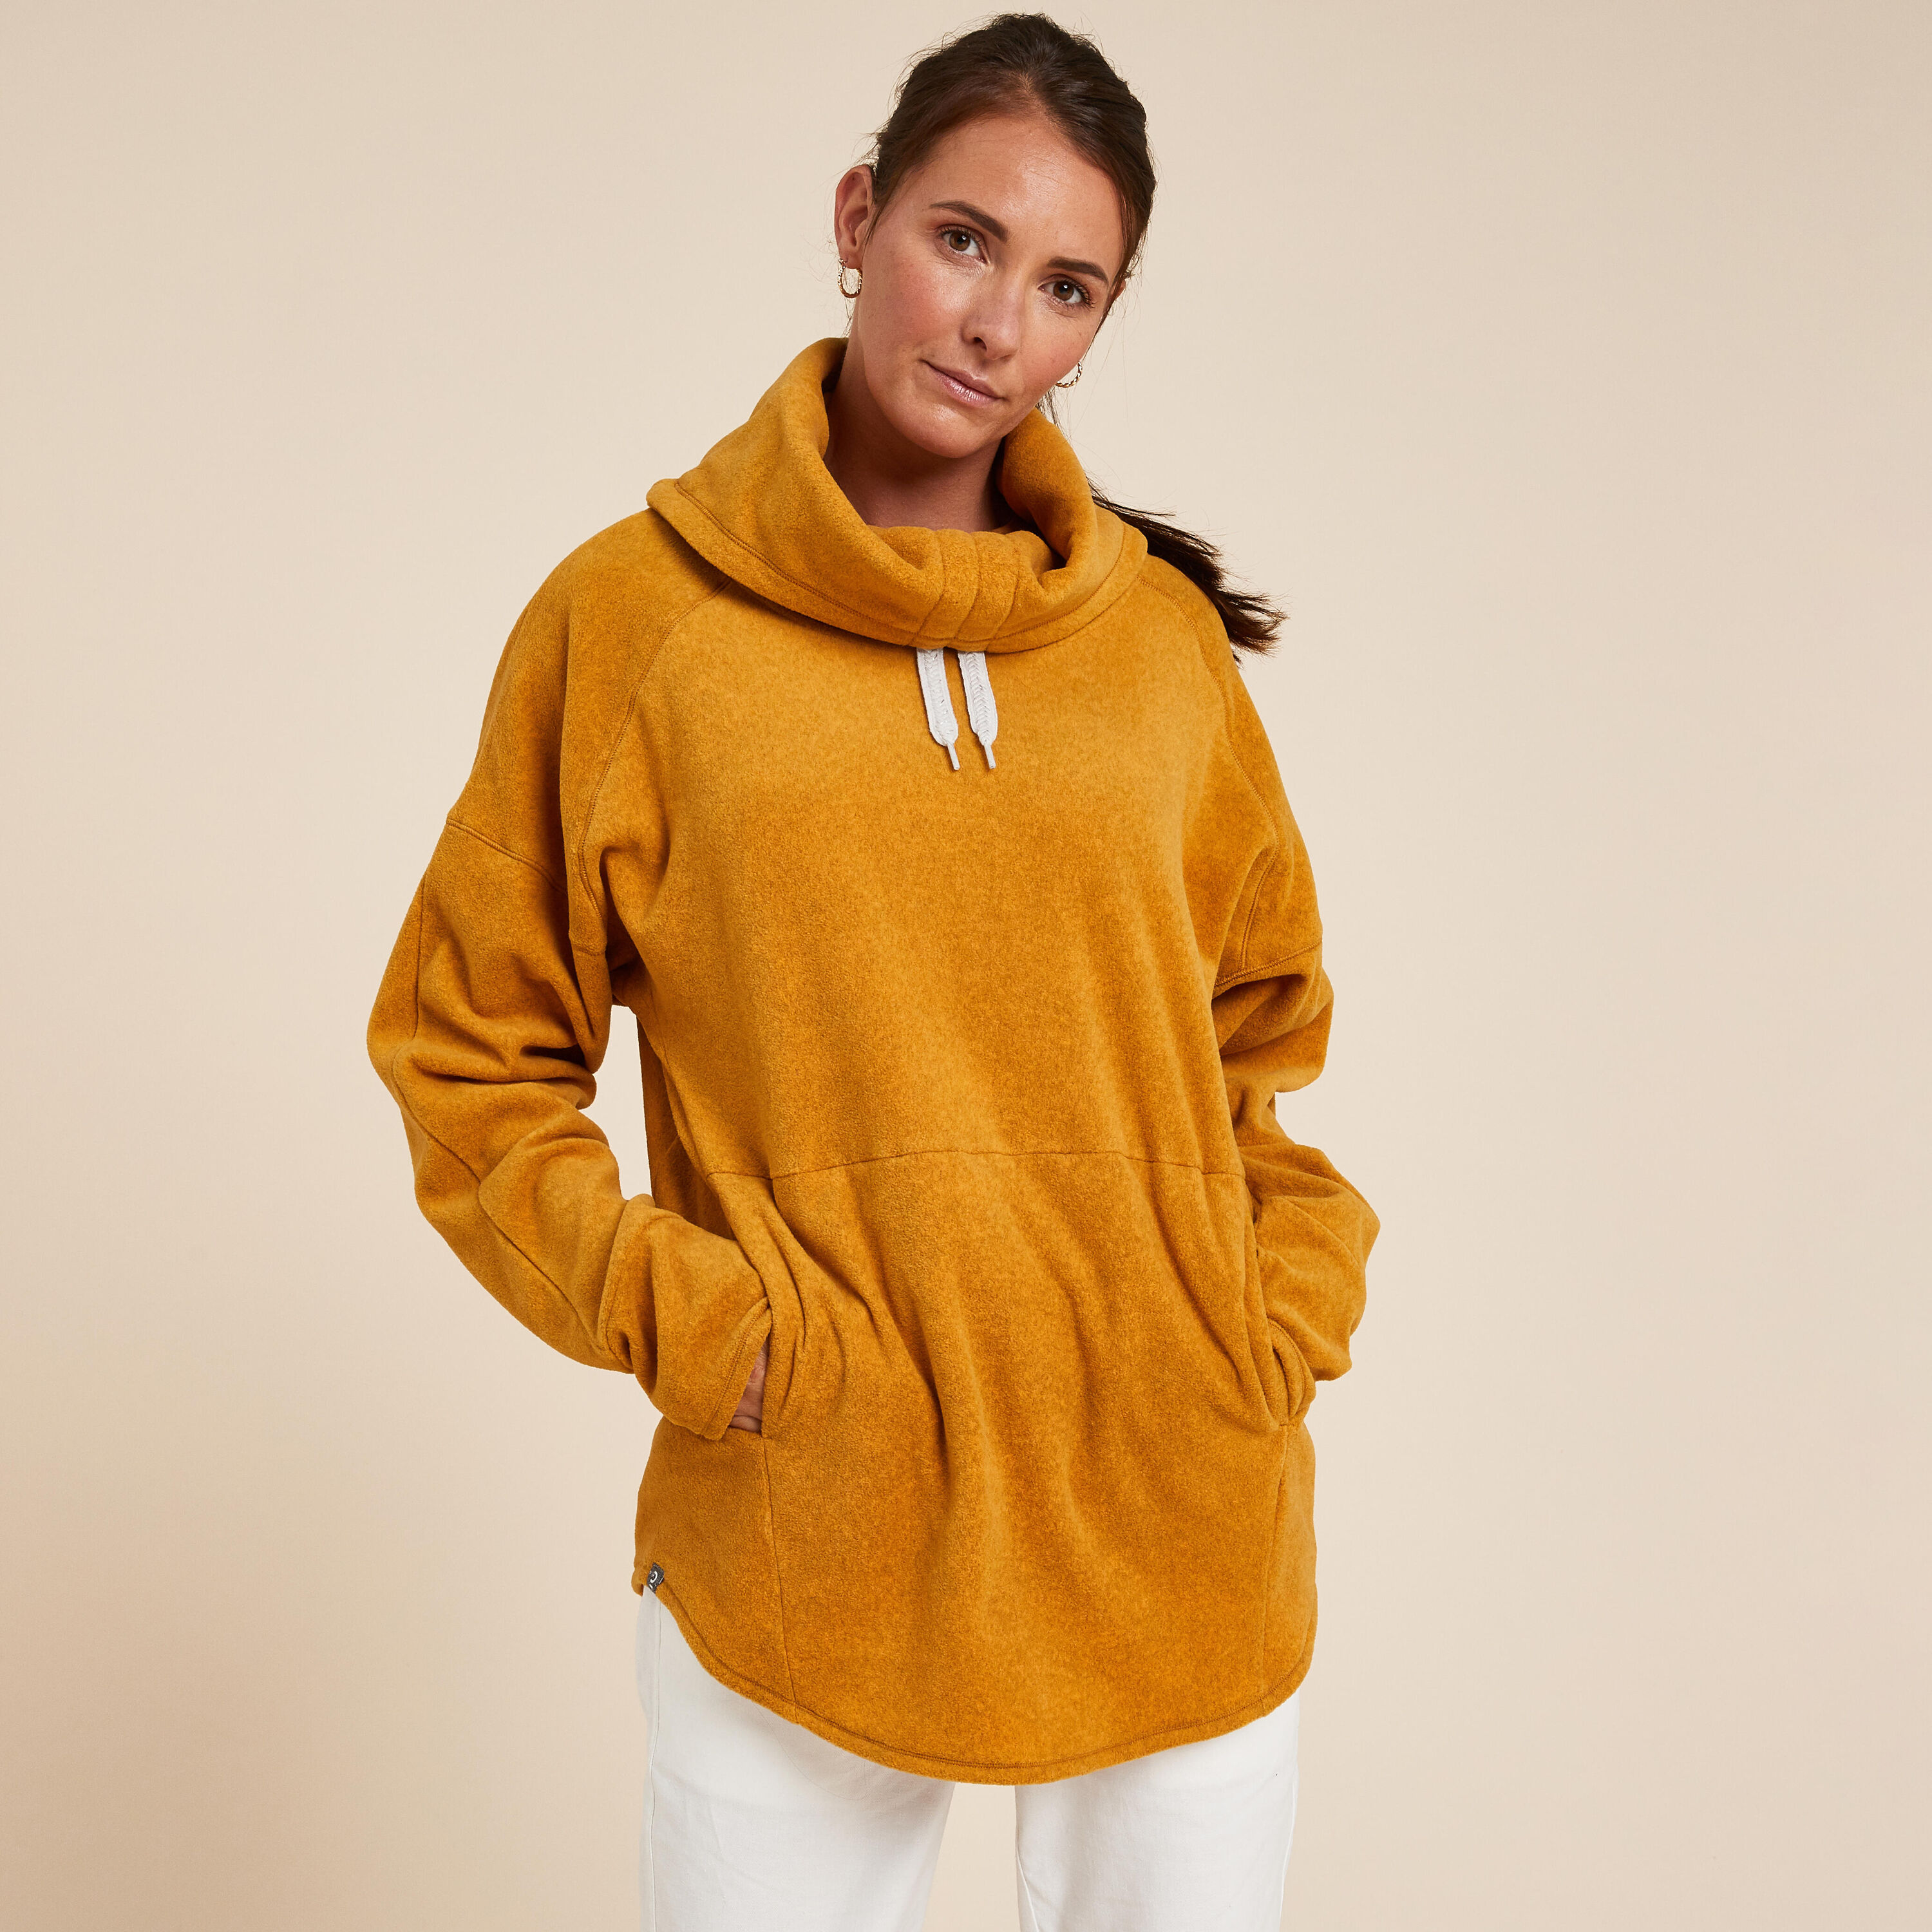 KIMJALY Women's Fleece Relaxation Yoga Sweatshirt - Ochre